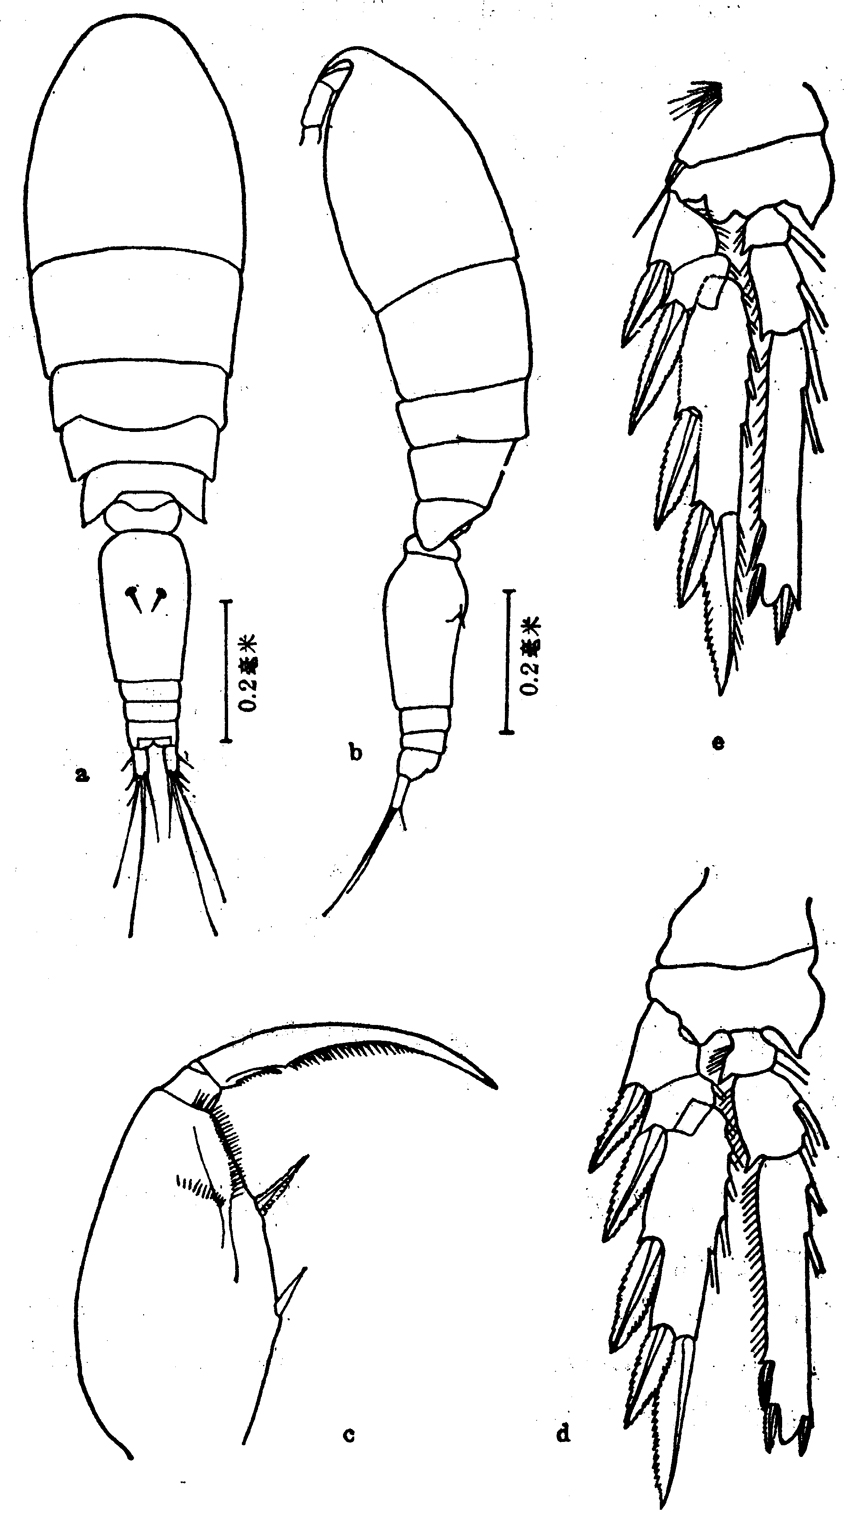 Espèce Triconia conifera - Planche 12 de figures morphologiques